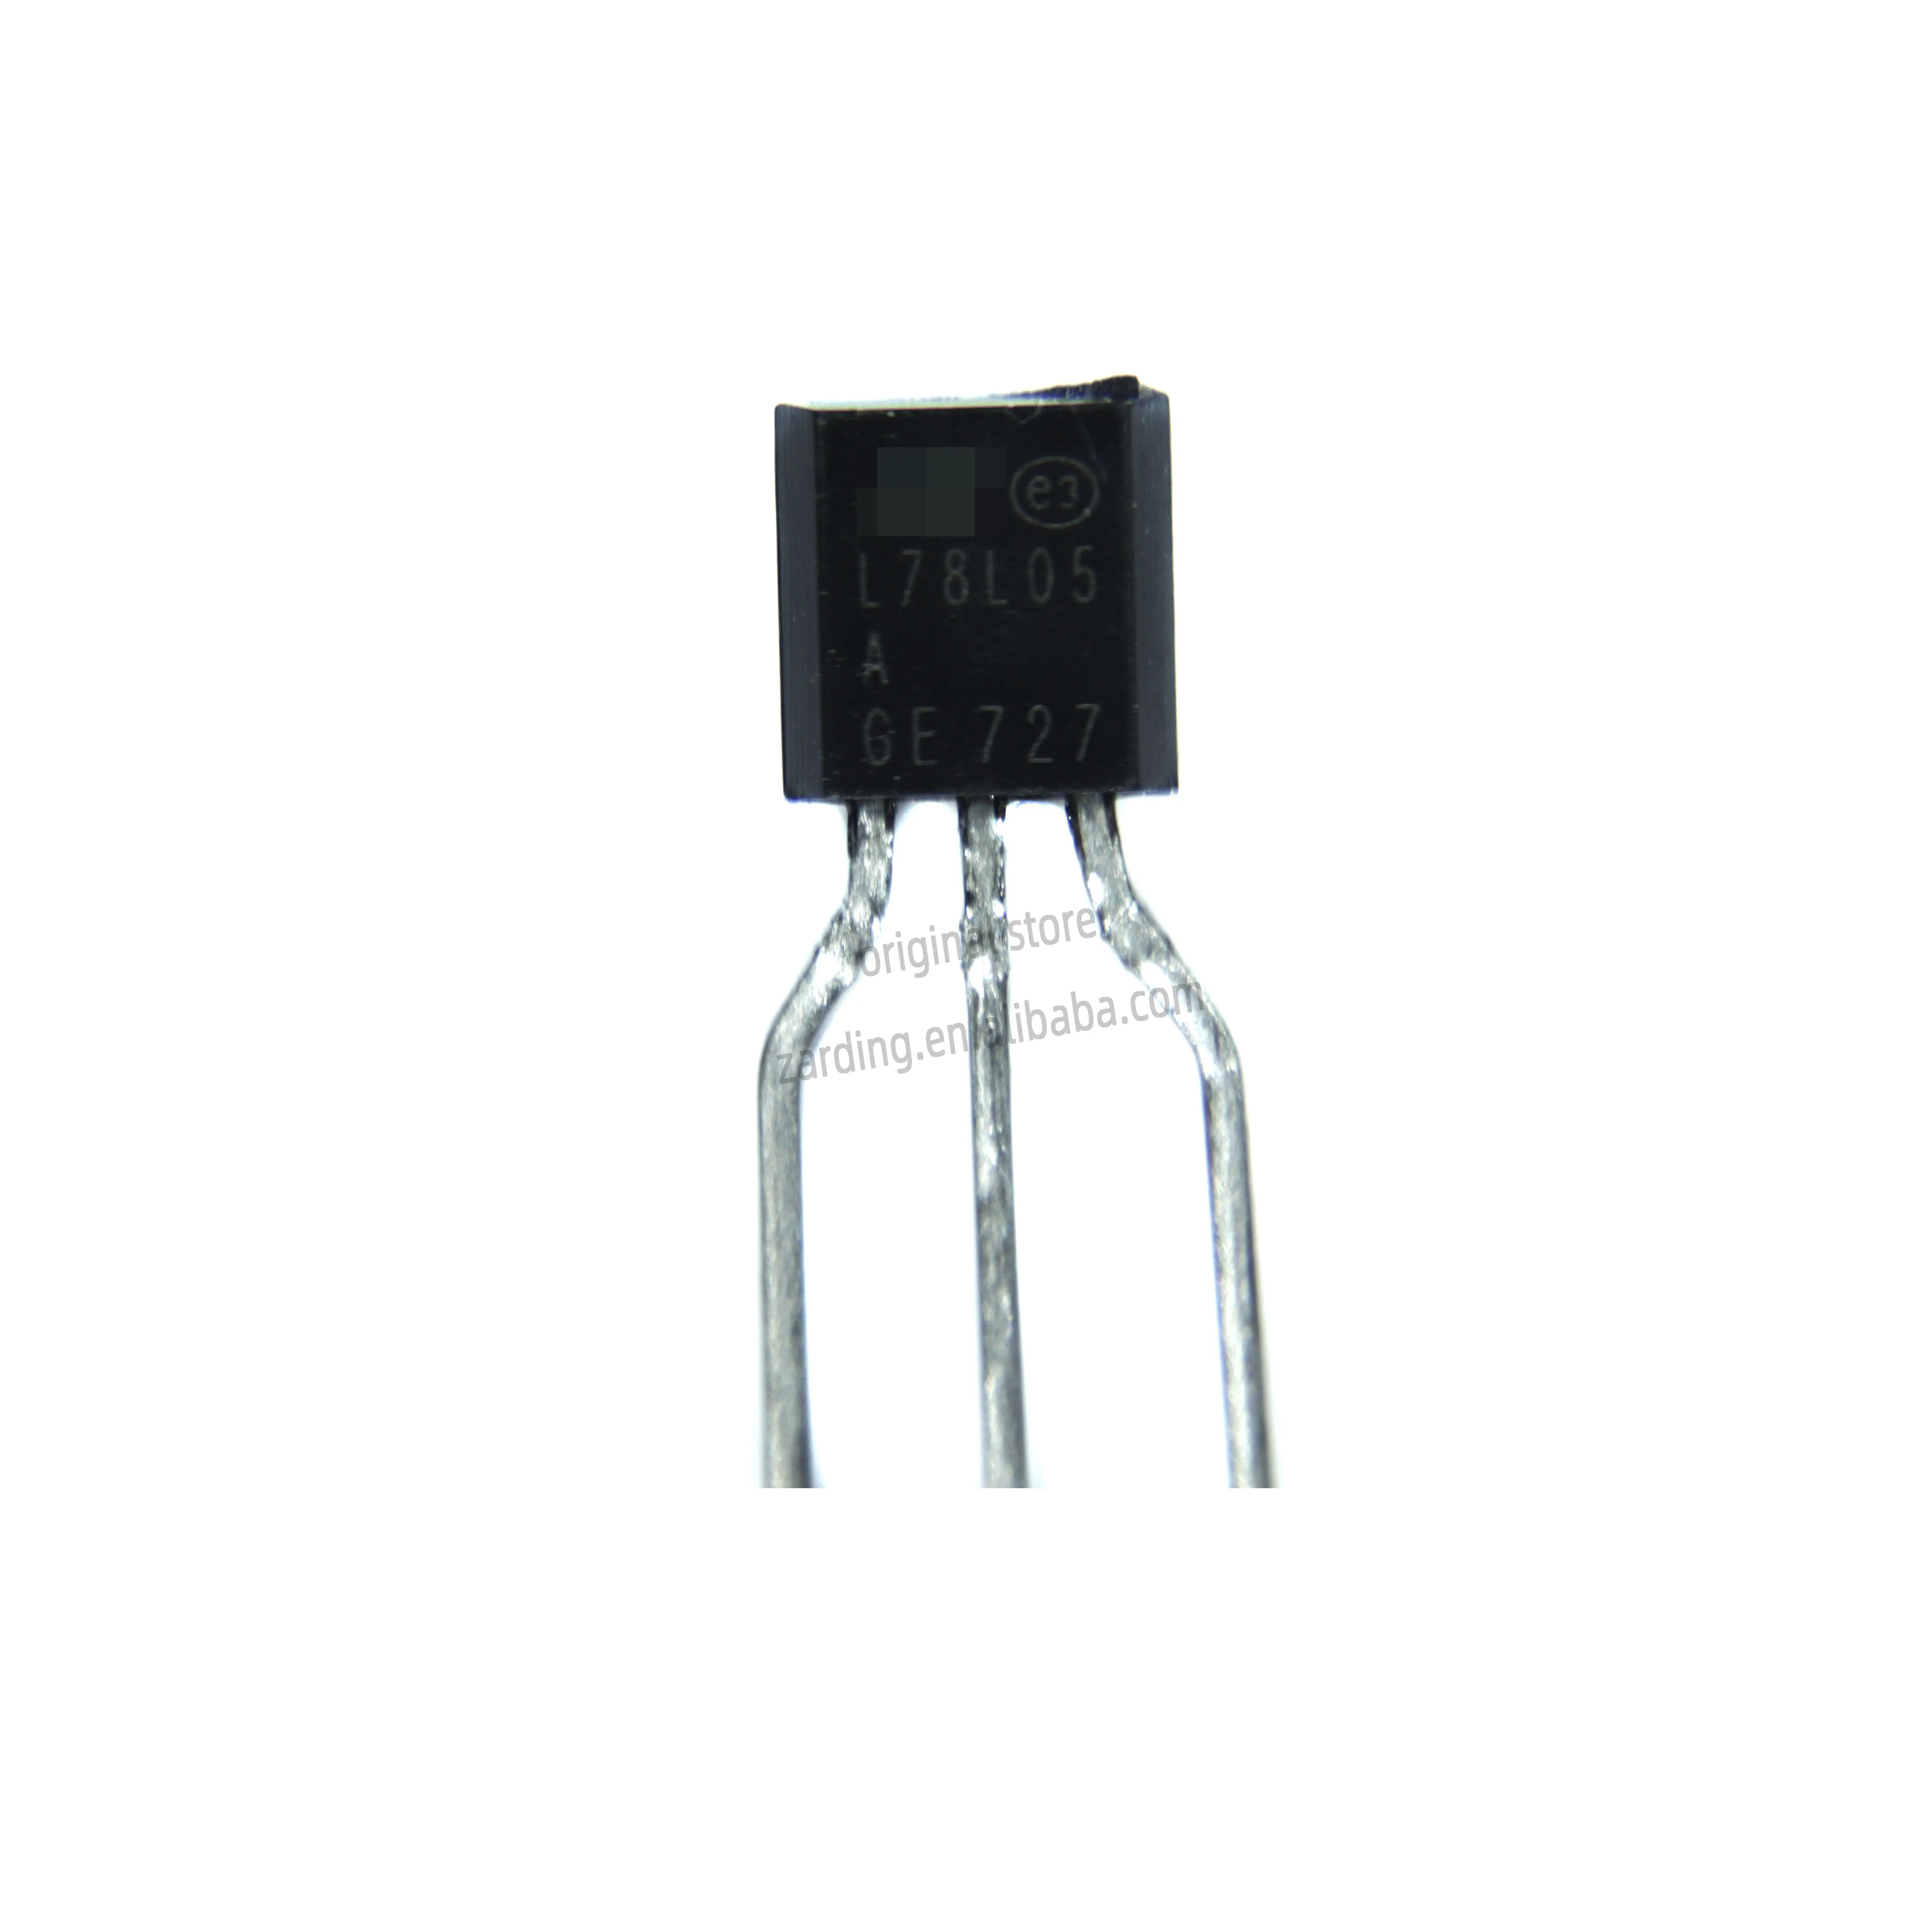 Zarding L78L05ACZ-AP elektronik bileşenler doğrusal voltaj regülatörleri TO-92-3 L78L05ACZ L78L L78L05ACZ-AP